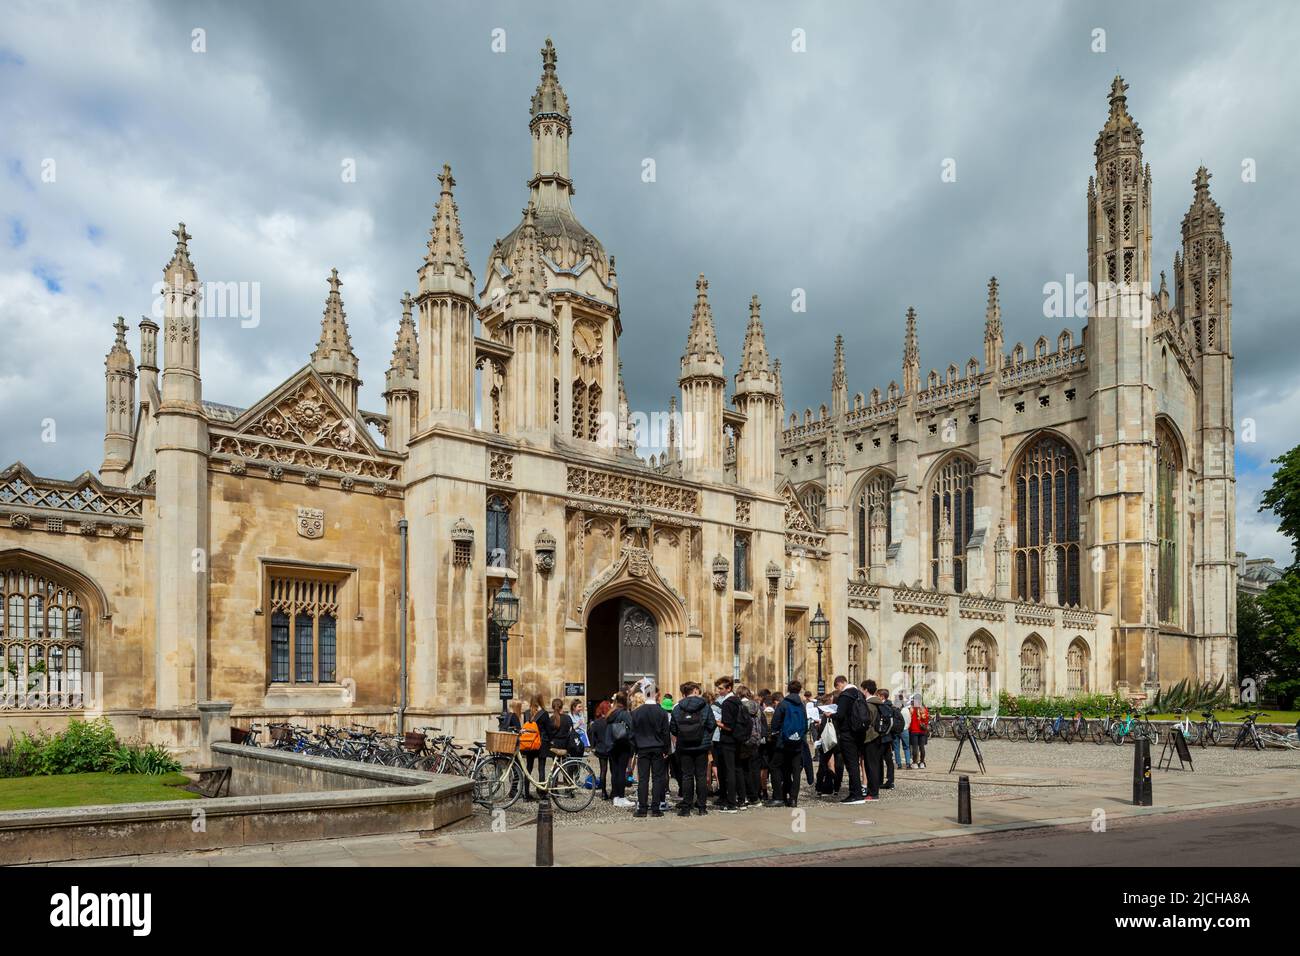 Nuages orageux au-dessus du King's College de Cambridge, en Angleterre. Banque D'Images